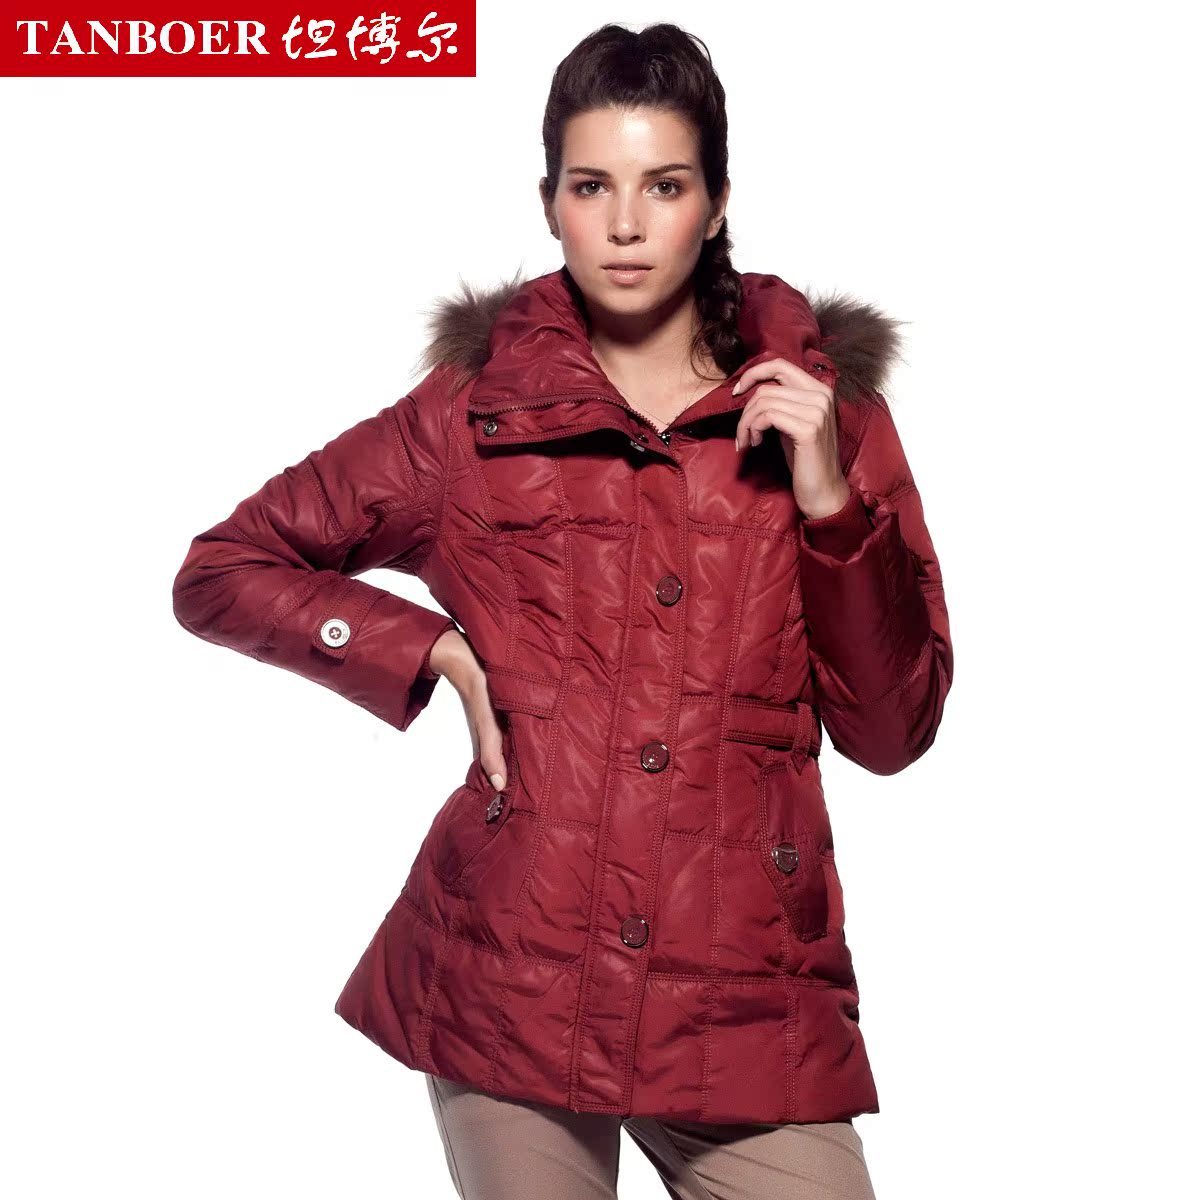 坦博尔羽绒服2011新款-最时尚最畅销的坦博尔